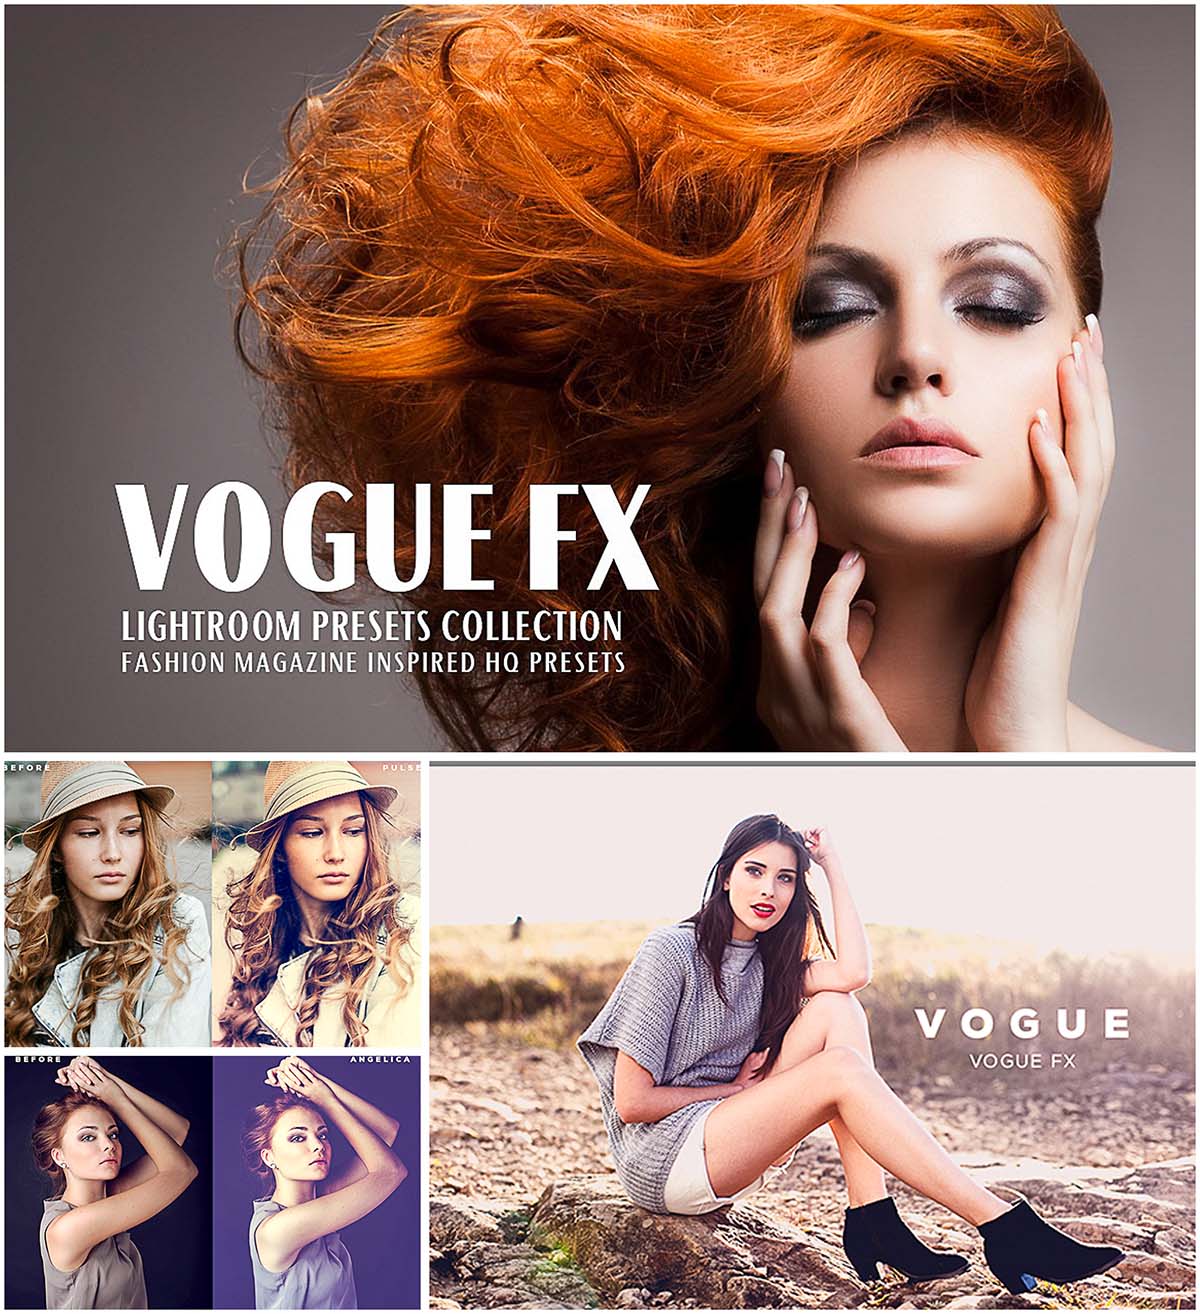 Vogue fx lightroom presets collection